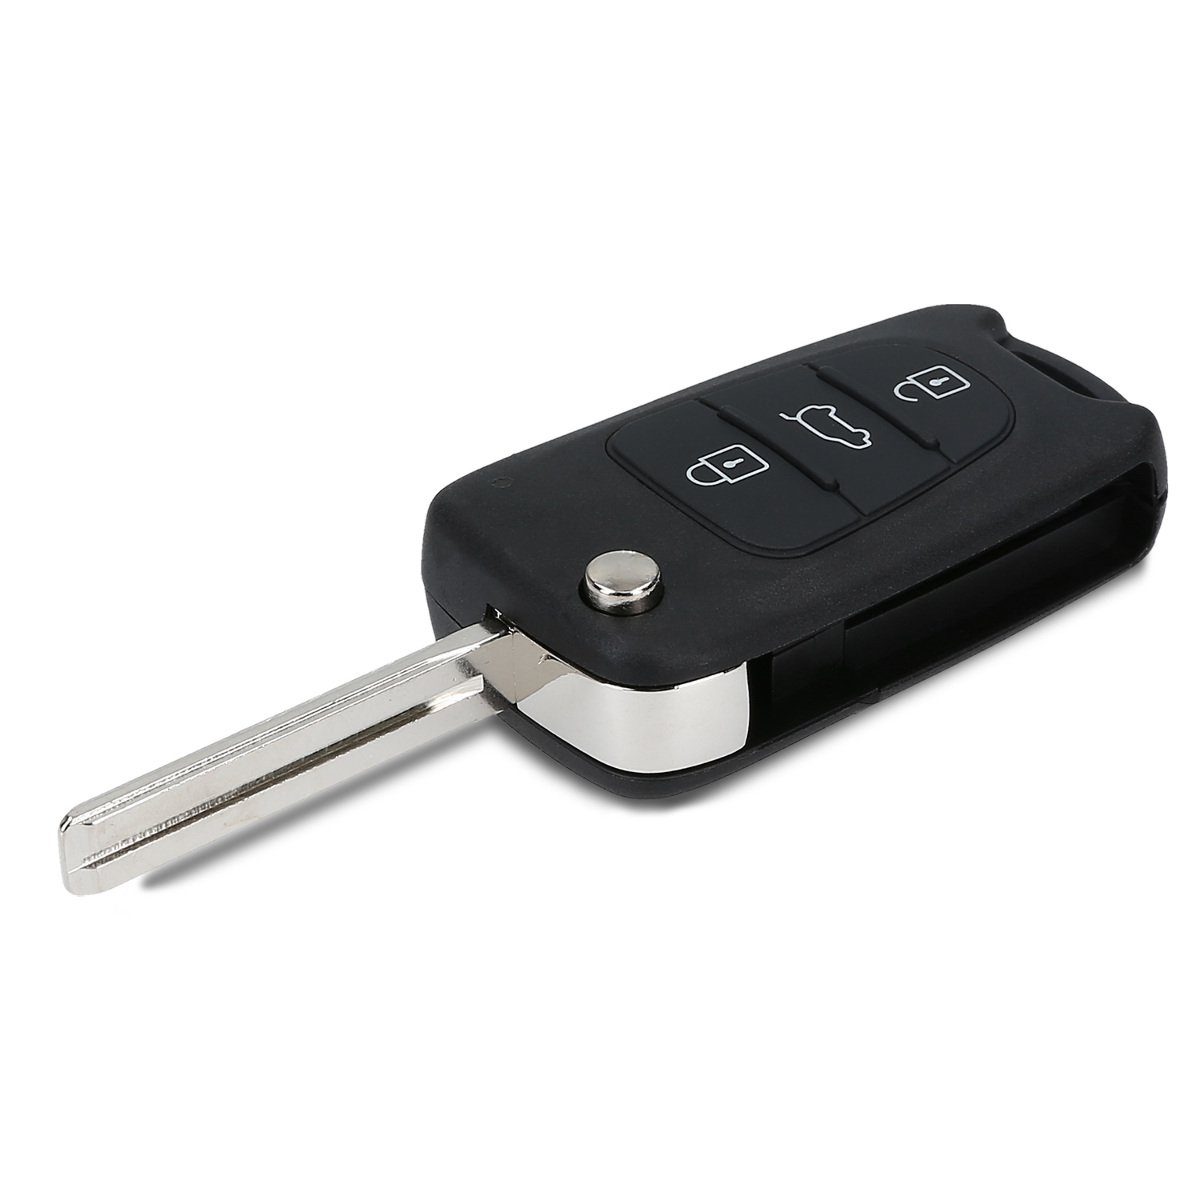 ohne Auto Hyundai - kwmobile Elektronik Schlüsselgehäuse Batterien Transponder Autoschlüssel, Gehäuse für Schlüsseltasche